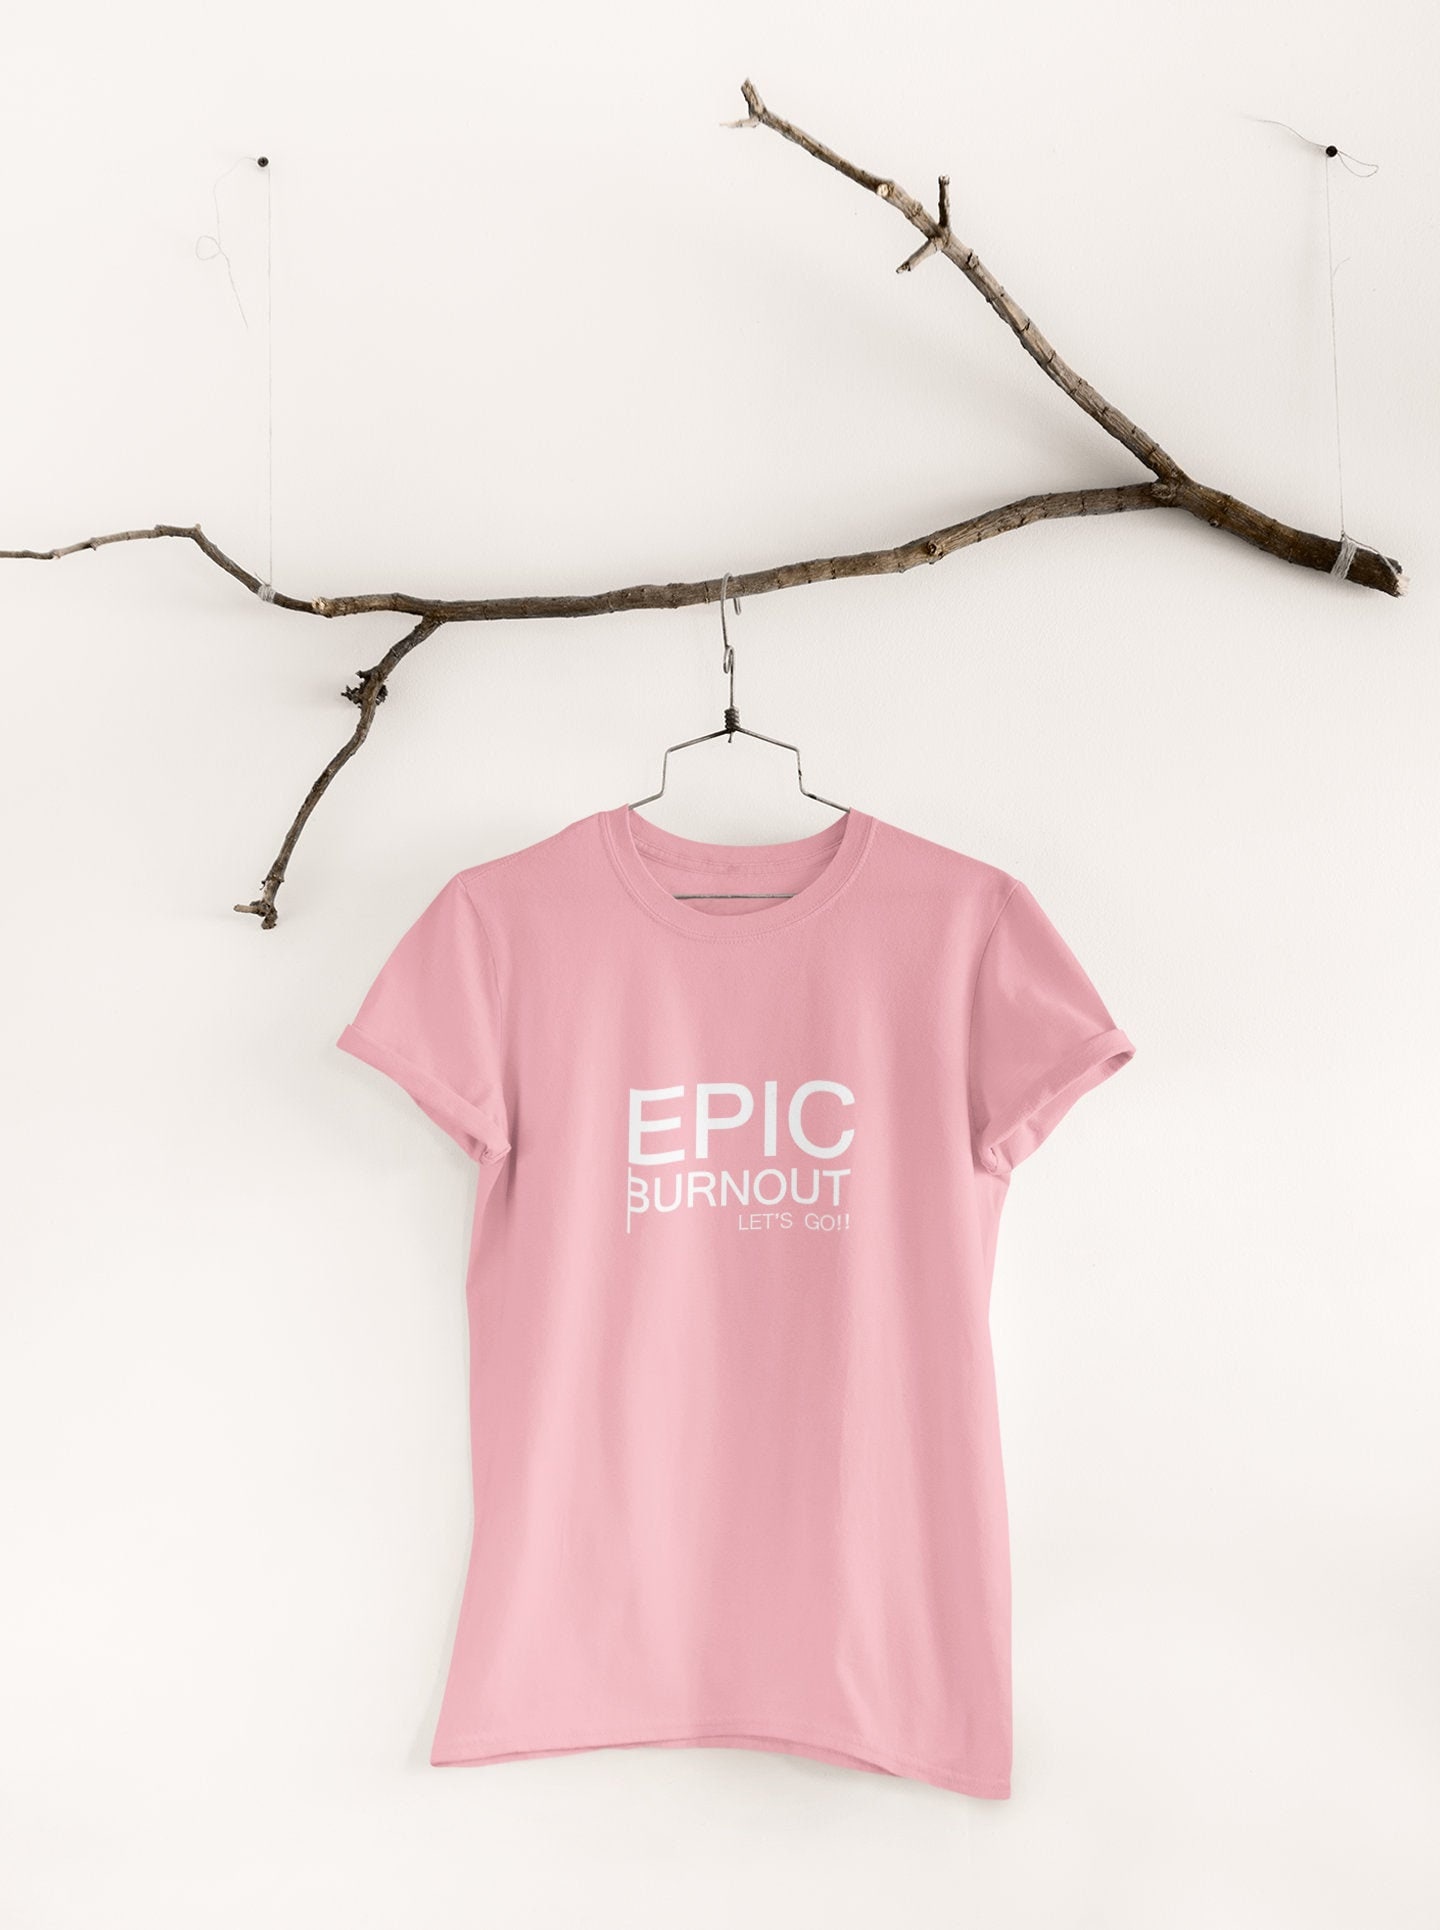 Caroline Girvan EPIC Workout T-shirt -  UK